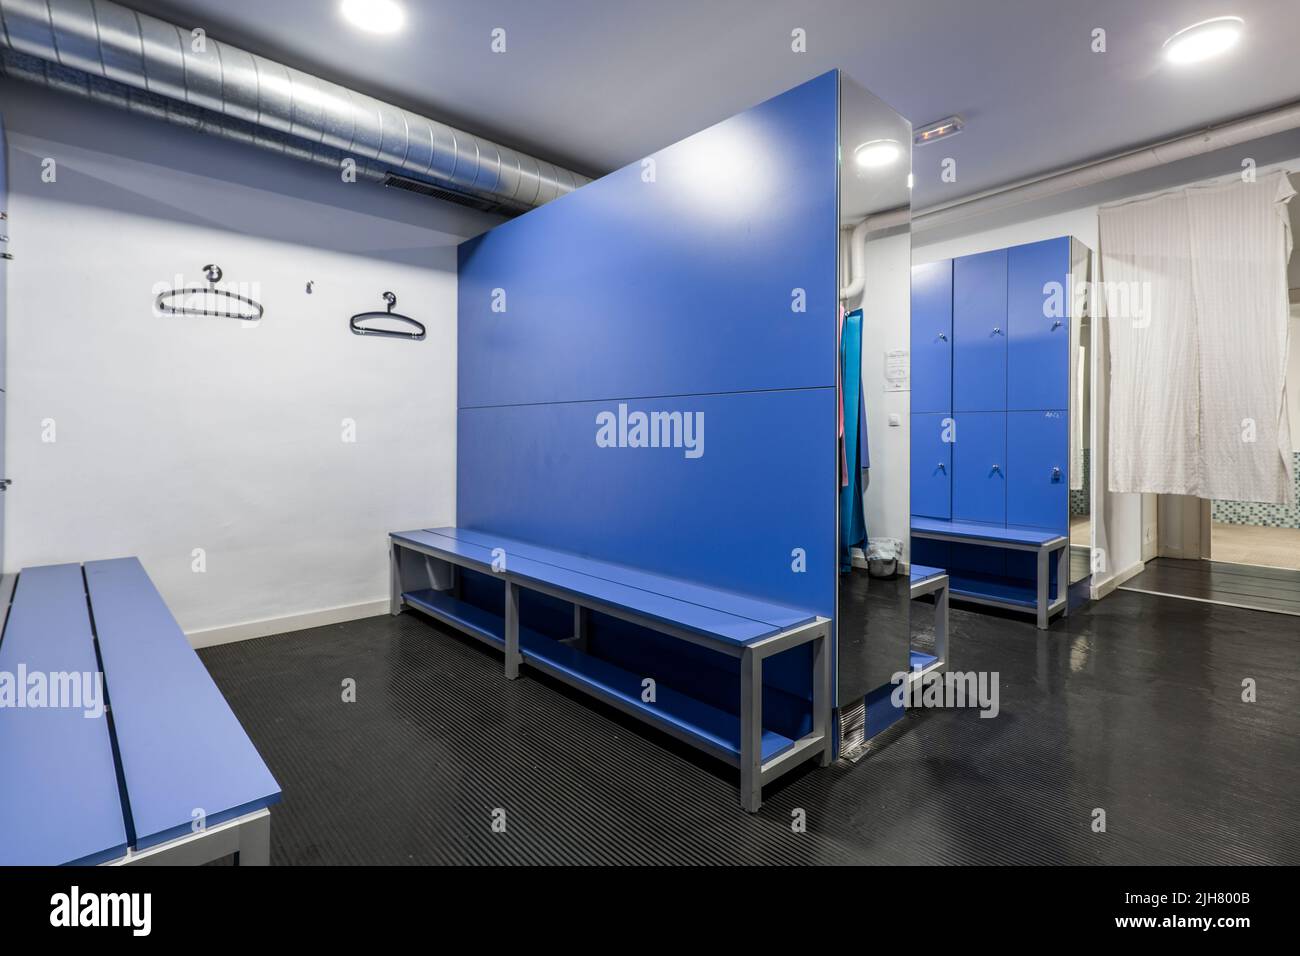 Casiers en bois bleu avec banquettes assorties, miroirs et cintres noirs dans un vestiaire de salle de gym Banque D'Images